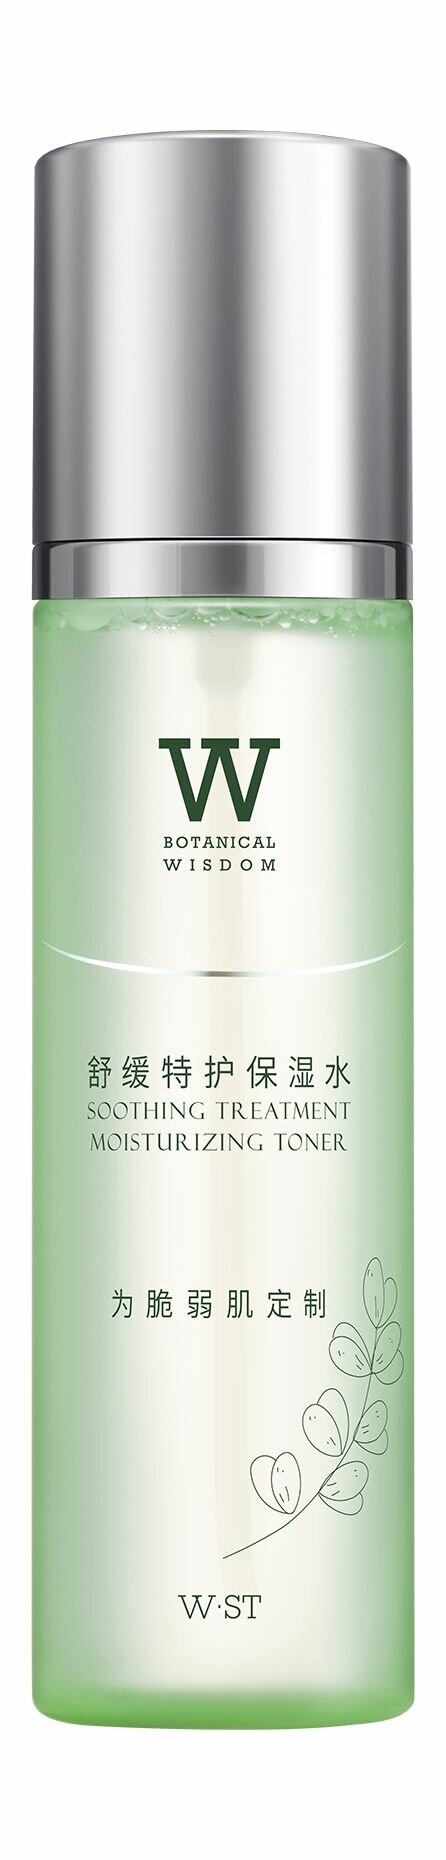 Увлажняющий успокаивающий тонер для чувствительной кожи лица / Botanical Wisdom Soothing Treatment Moisturizing Toner